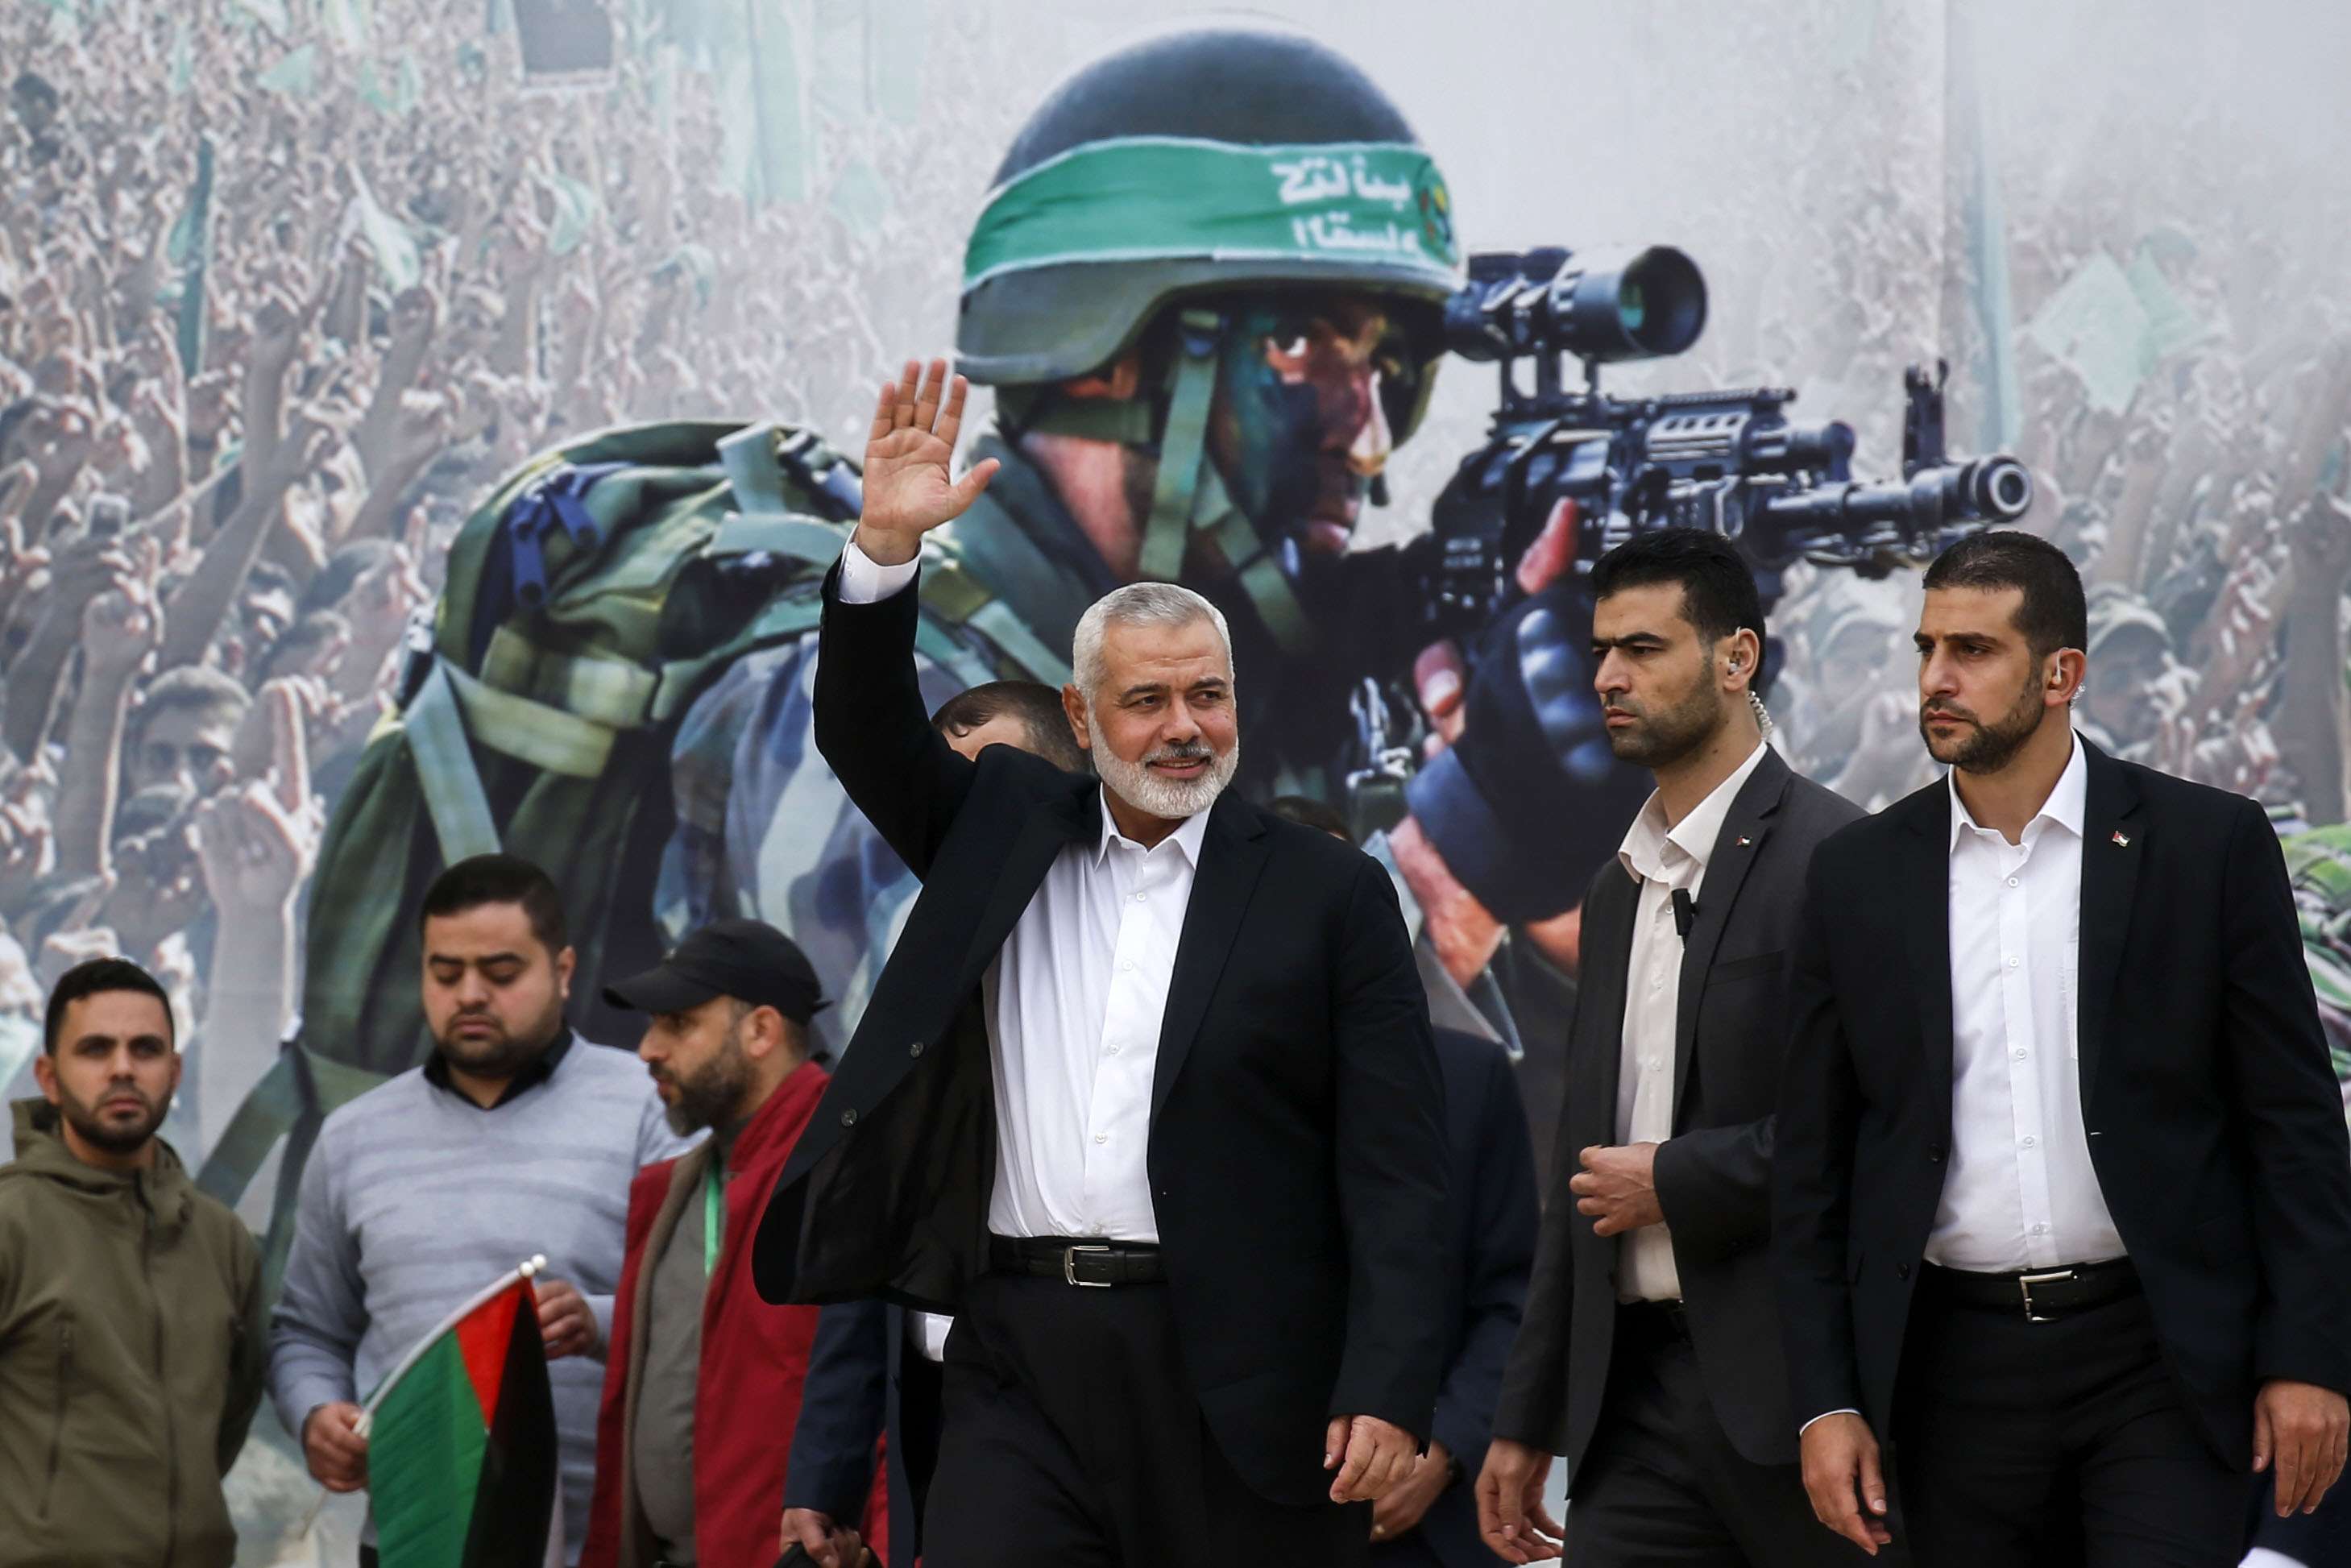 Gaza Hamas leader Ismail Haniya waves upon his arrival at a rally marking the 31st anniversary of Hamas' founding